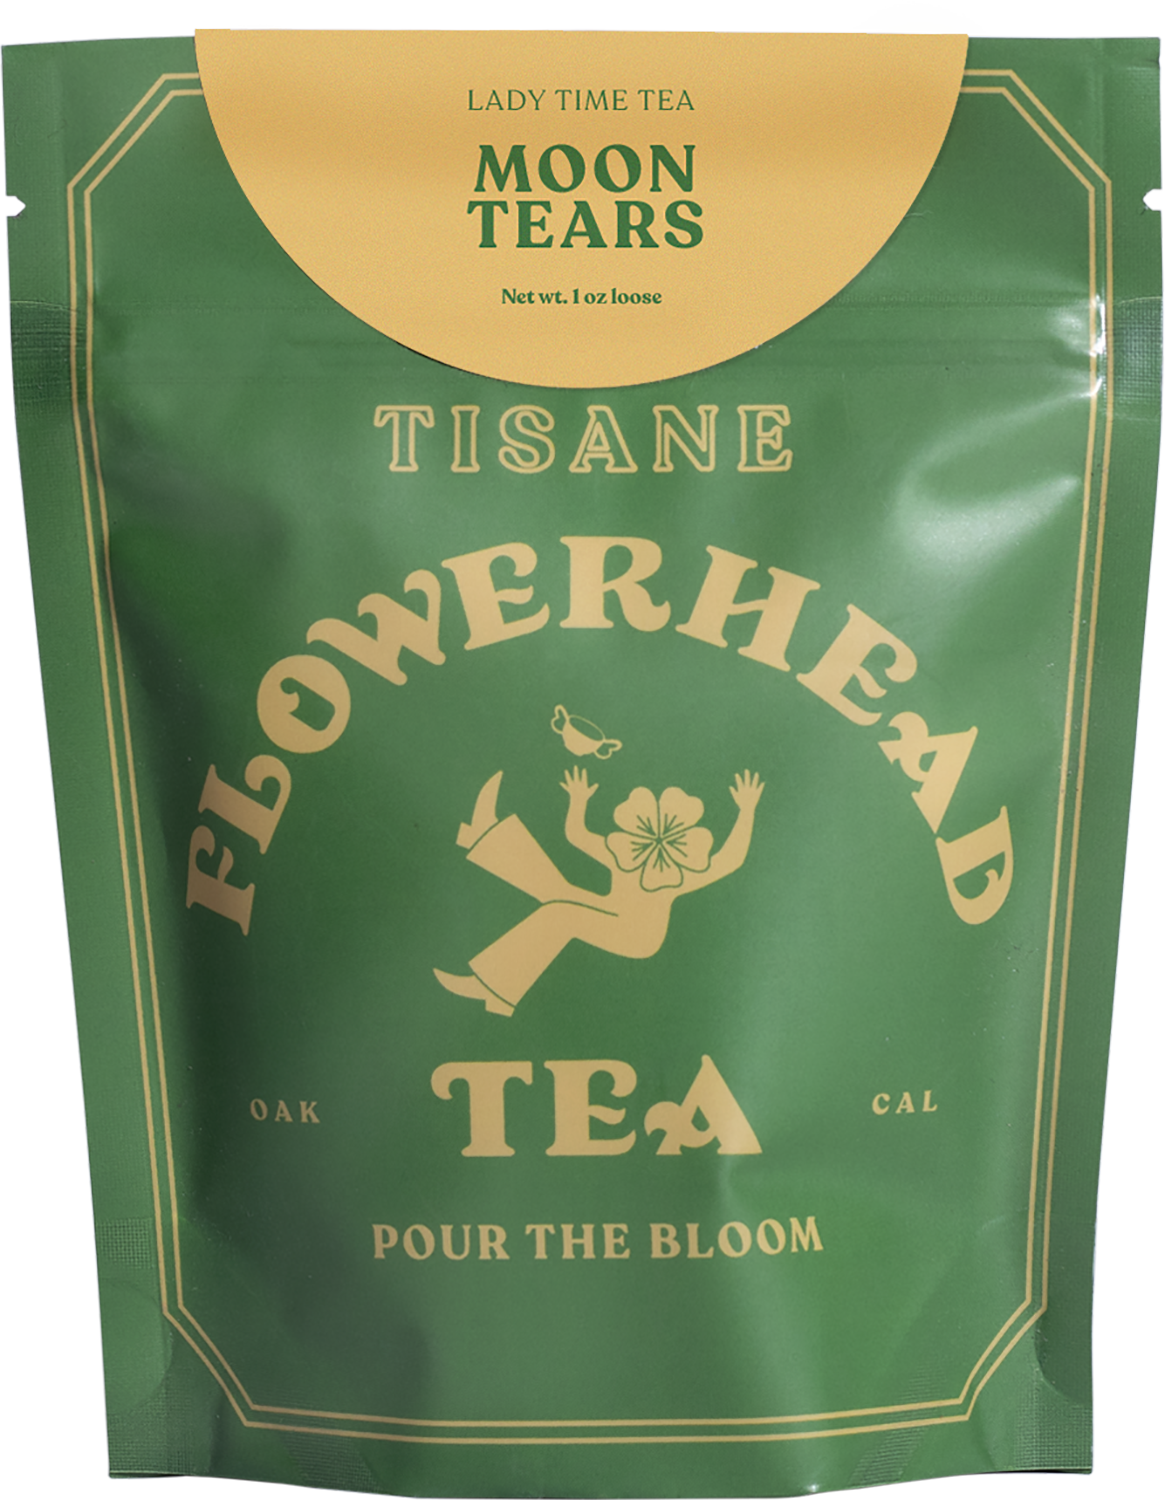 Mate Drank – Flowerhead Tea